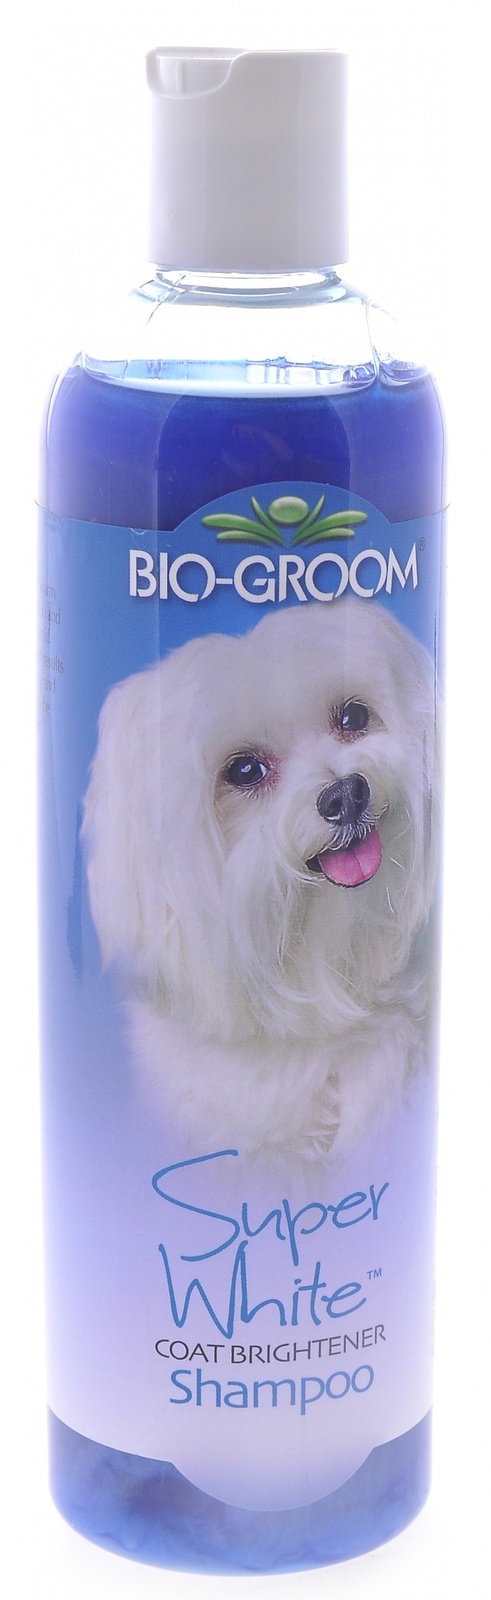 Biogroom Biogroom шампунь Супер Белый, концентрация 1:8, 3.2 литра готового шампуня (355 г) цена и фото